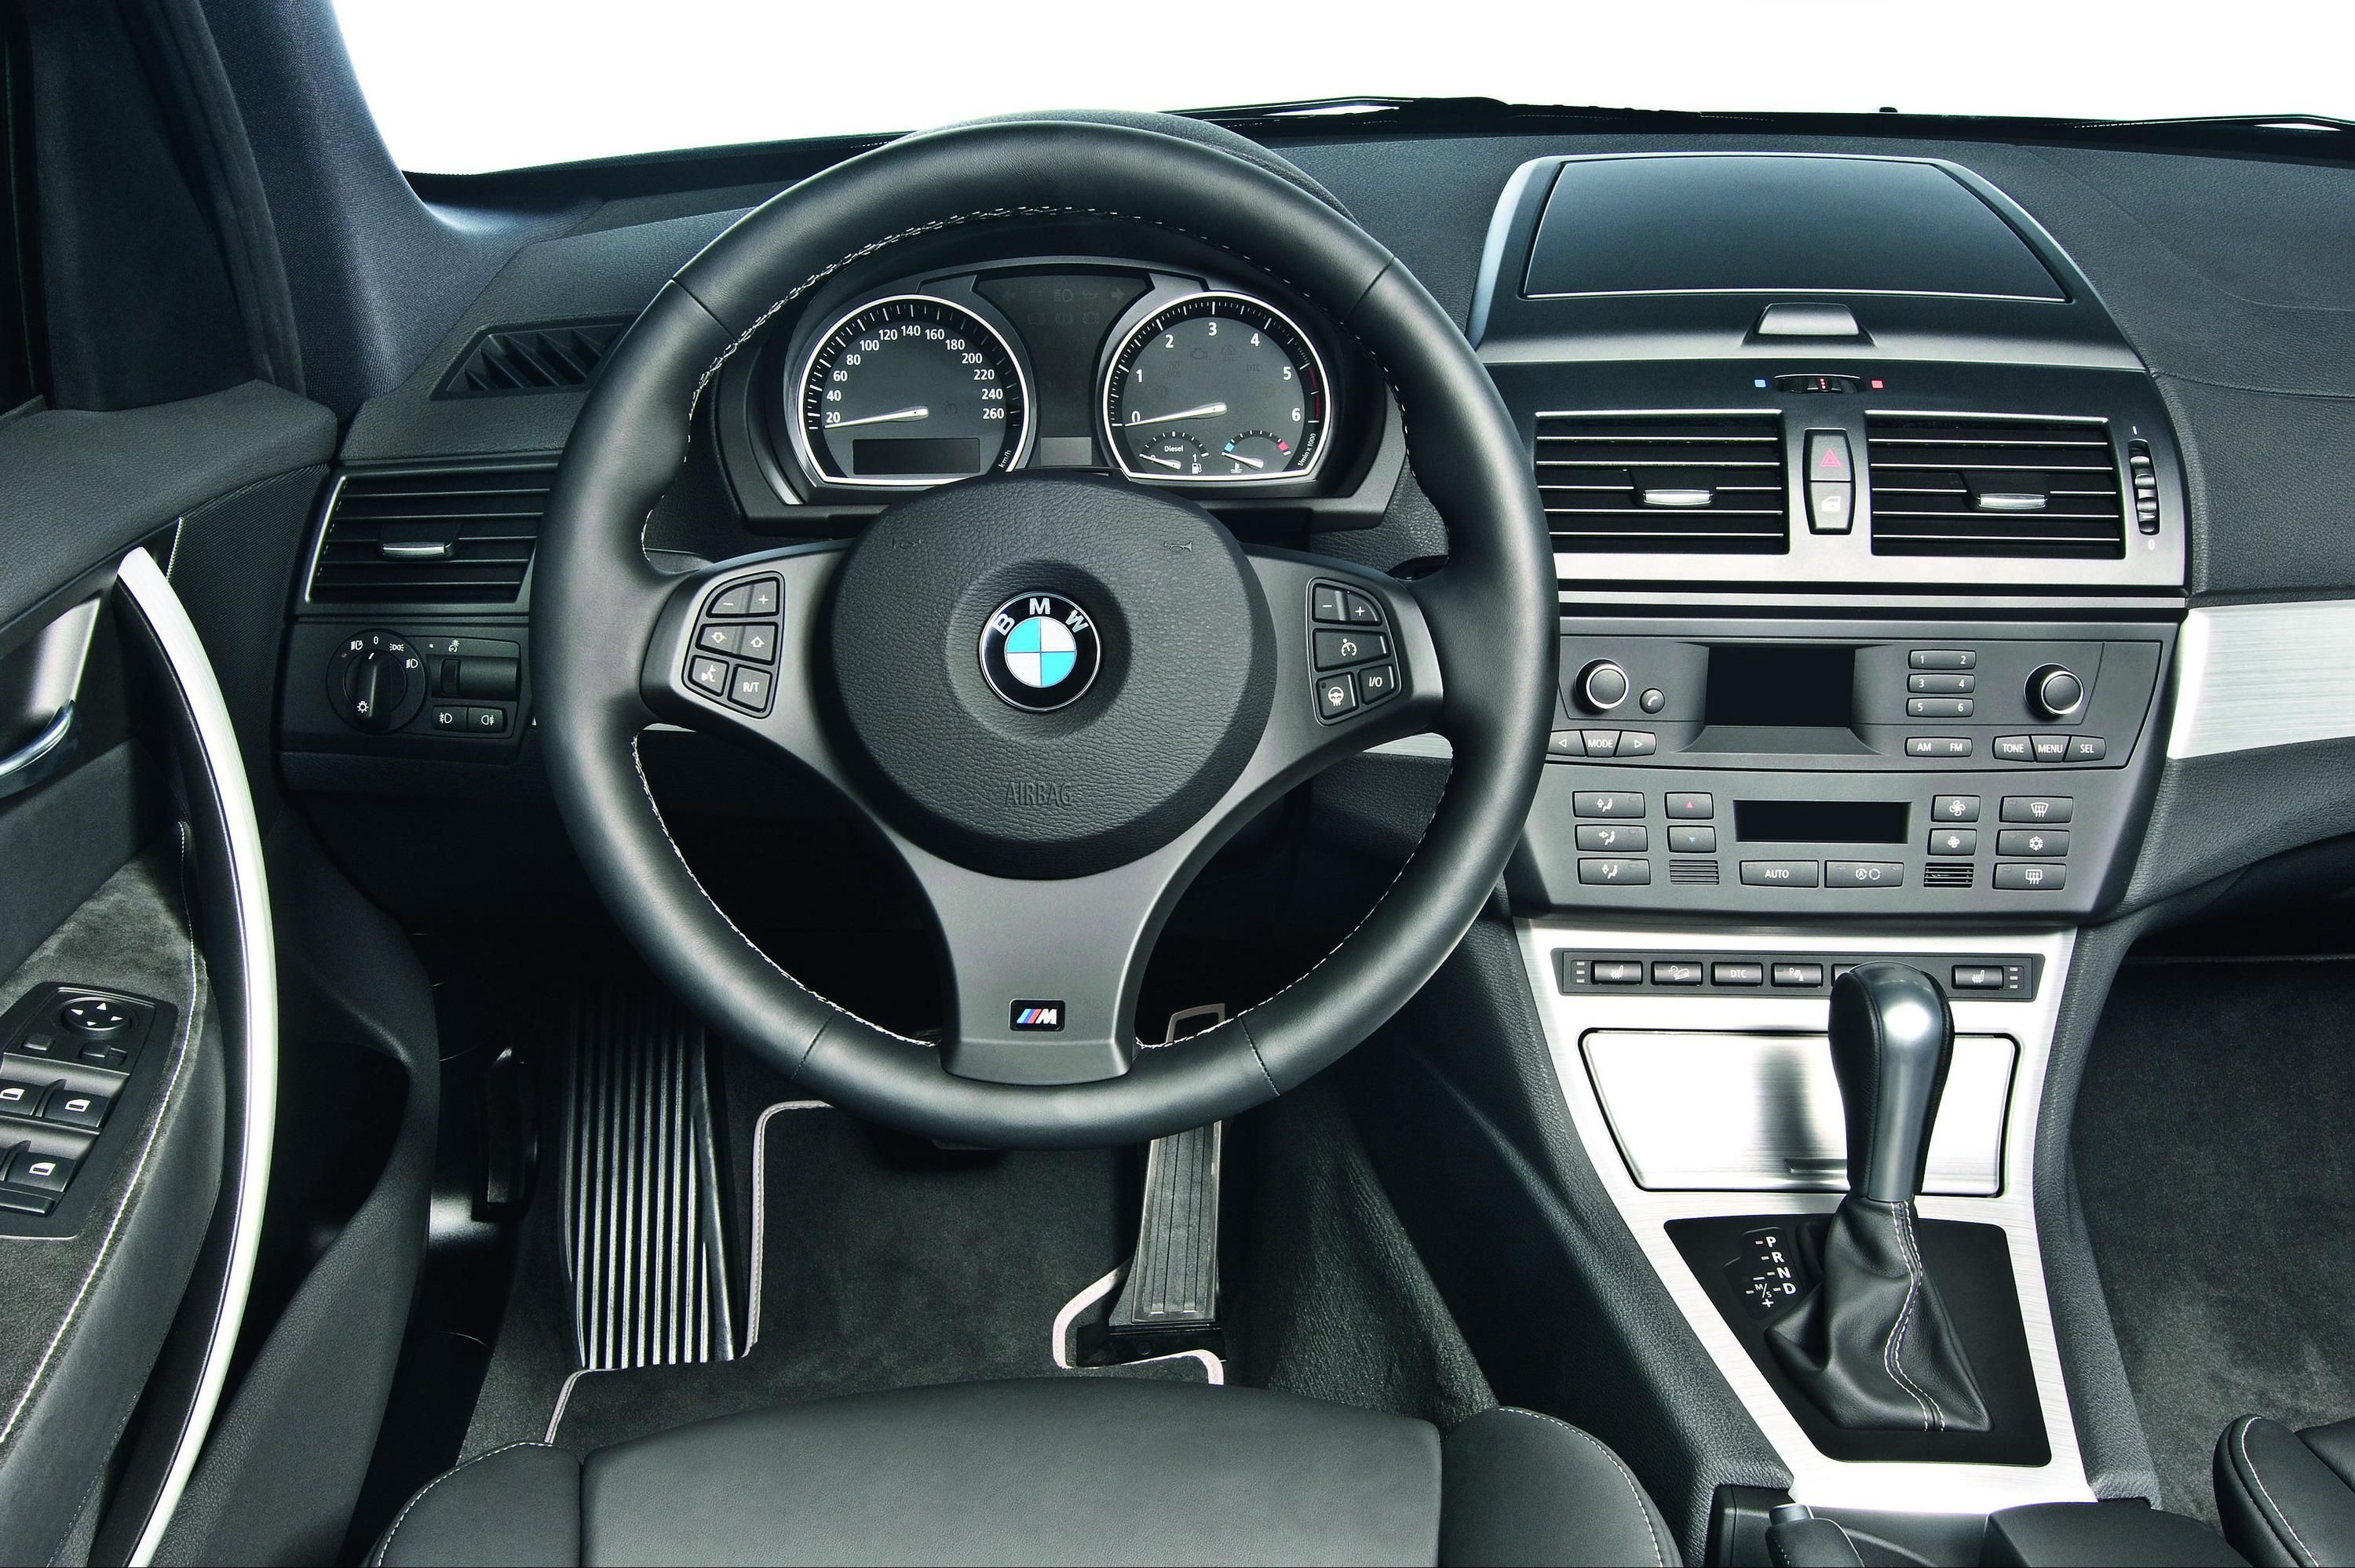 2009 BMW X3 Limited Sport Edition